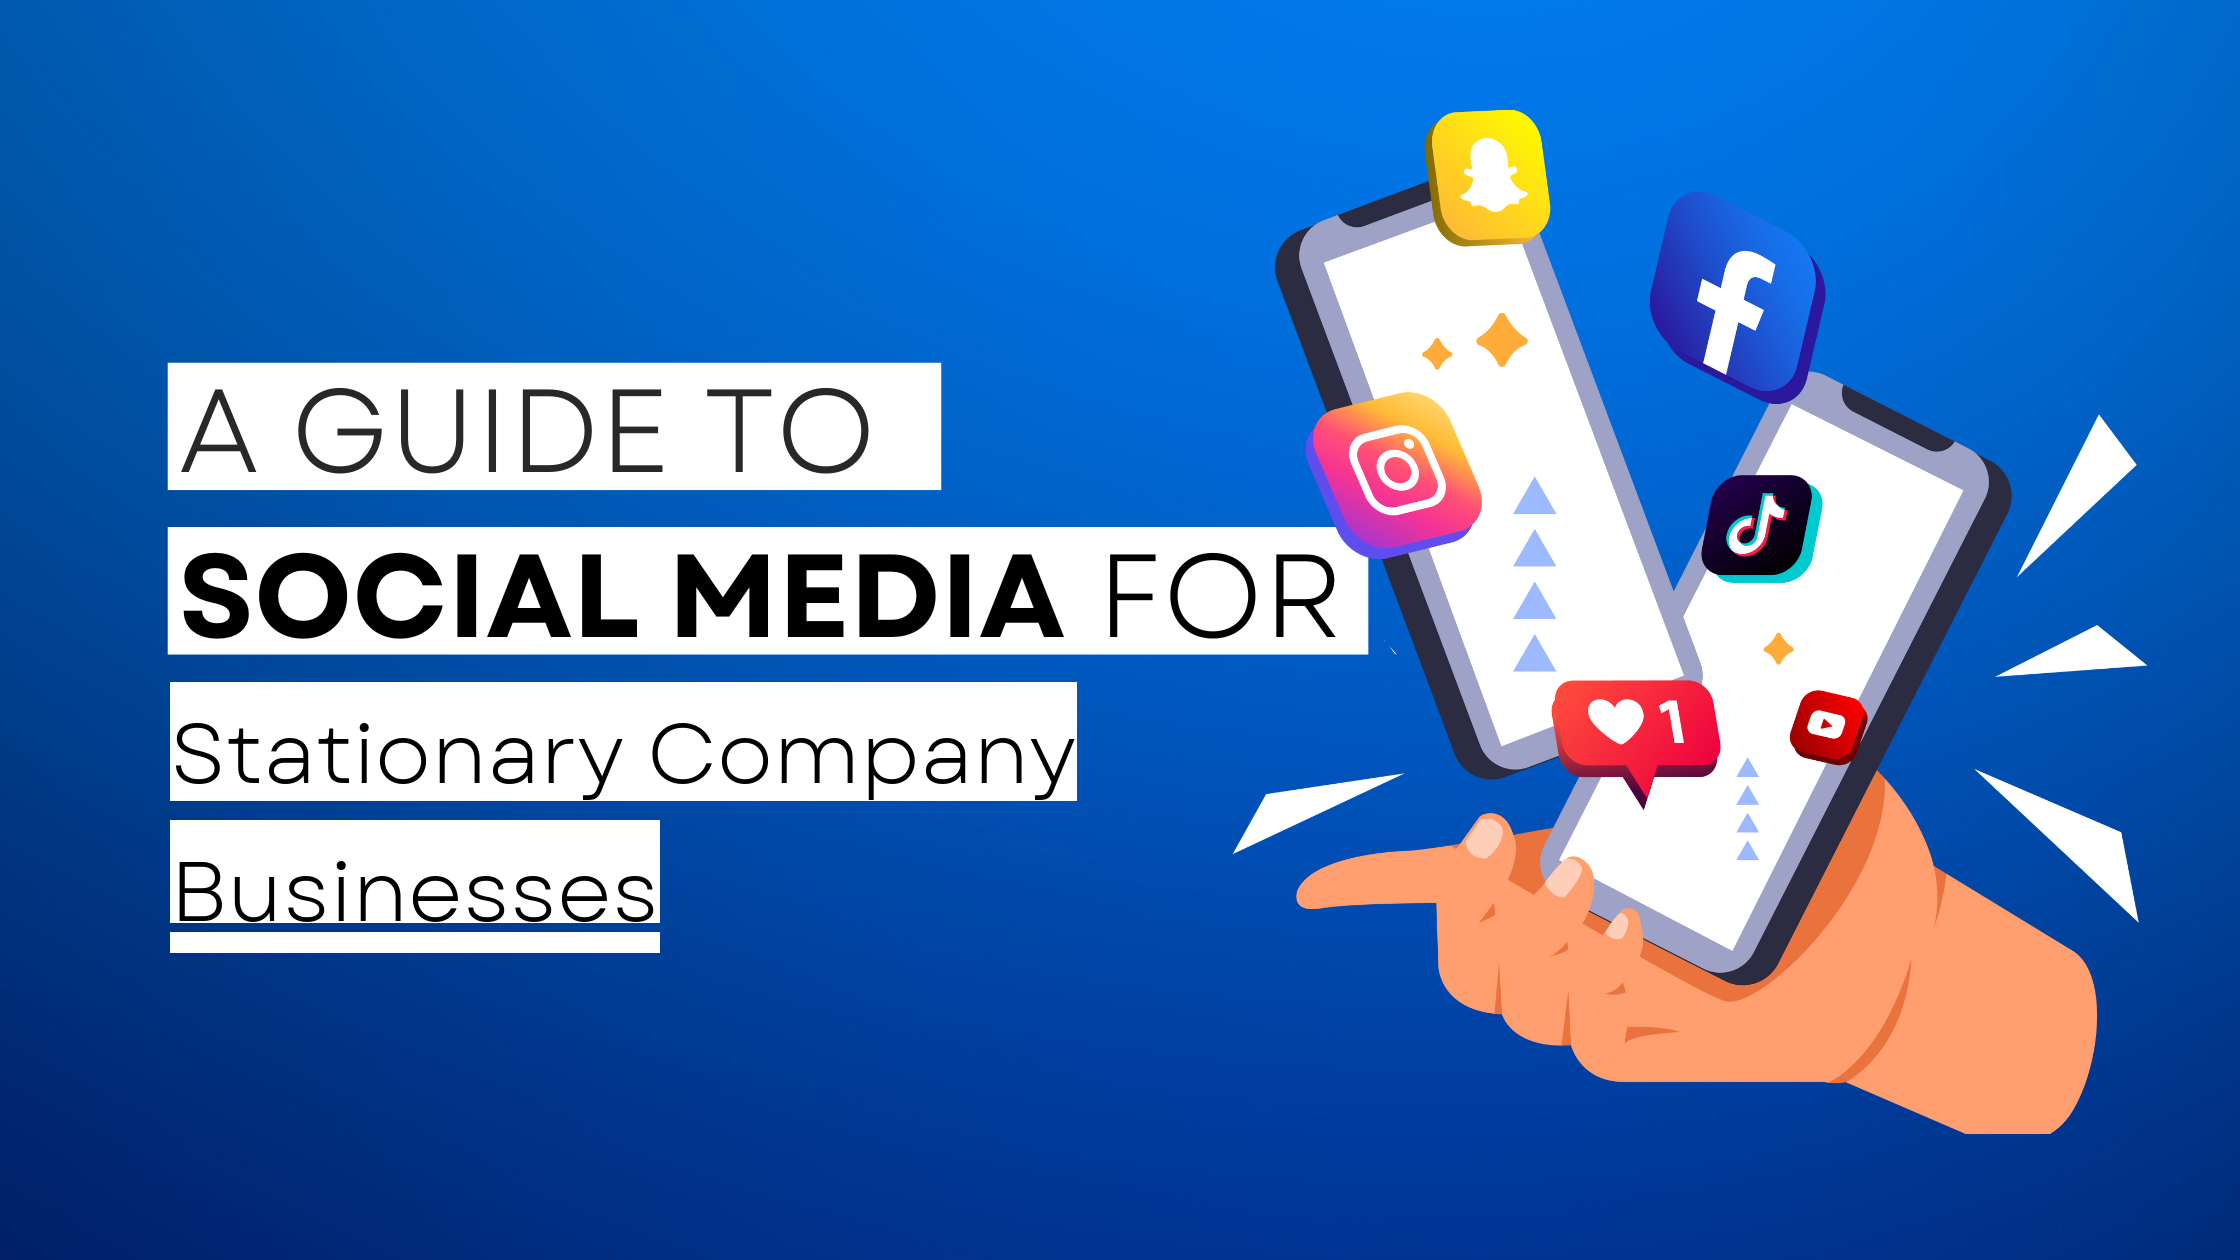 How to start Stationary Company on social media